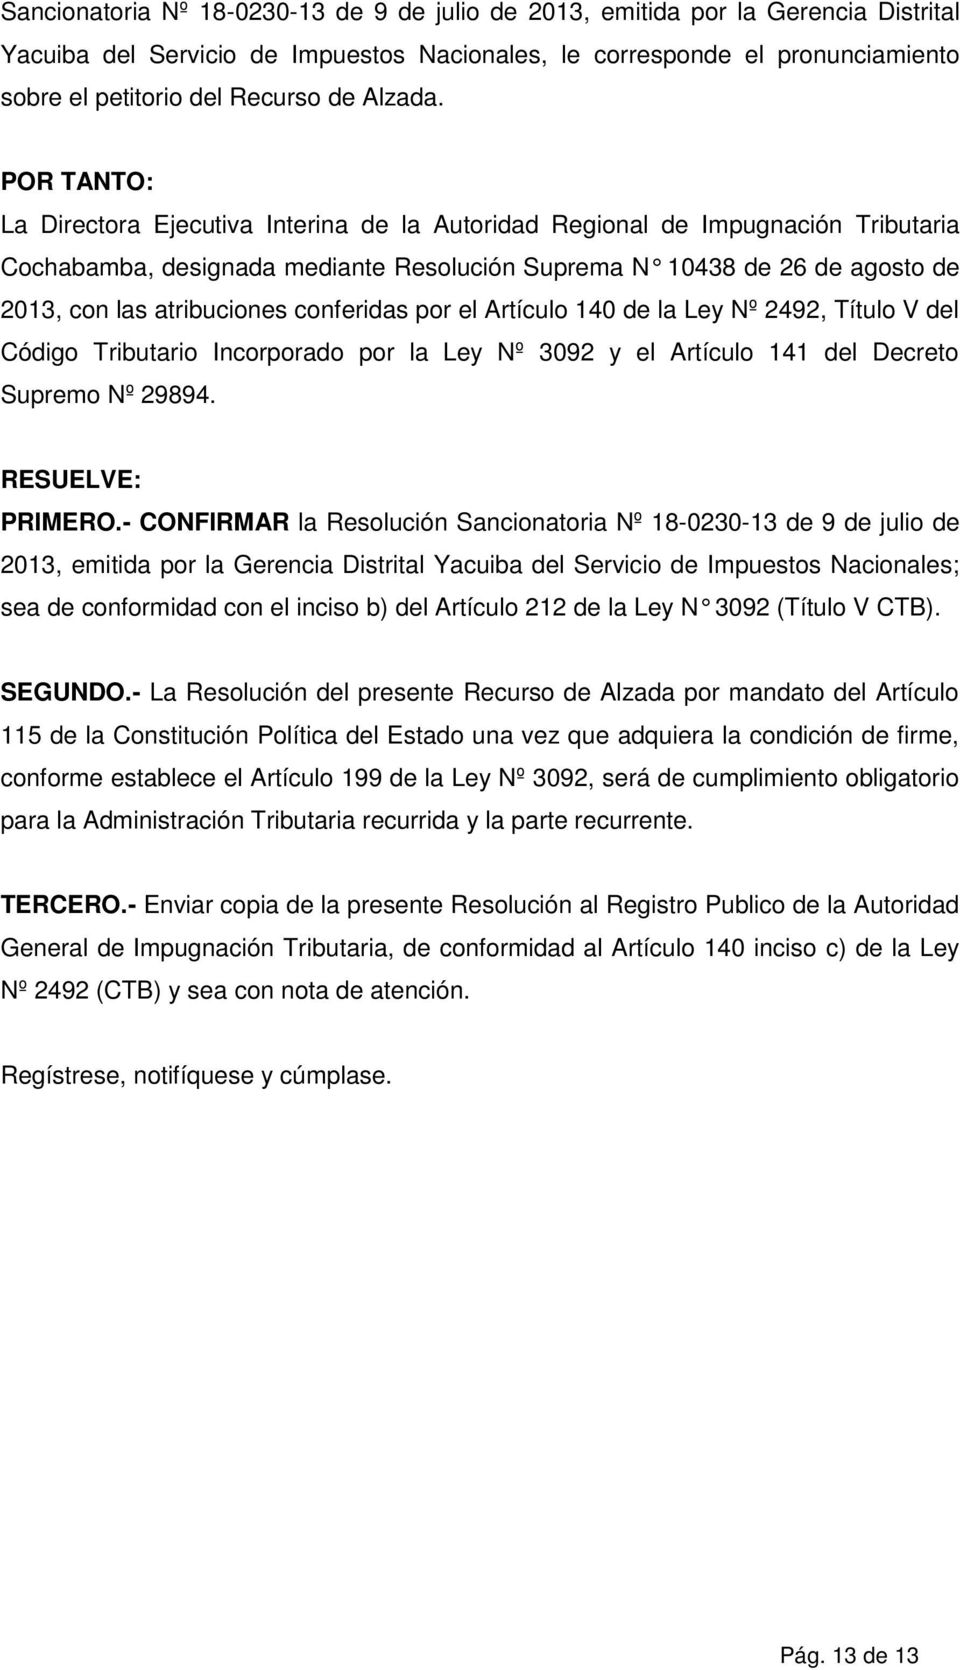 POR TANTO: La Directora Ejecutiva Interina de la Autoridad Regional de Impugnación Tributaria Cochabamba, designada mediante Resolución Suprema N 10438 de 26 de agosto de 2013, con las atribuciones